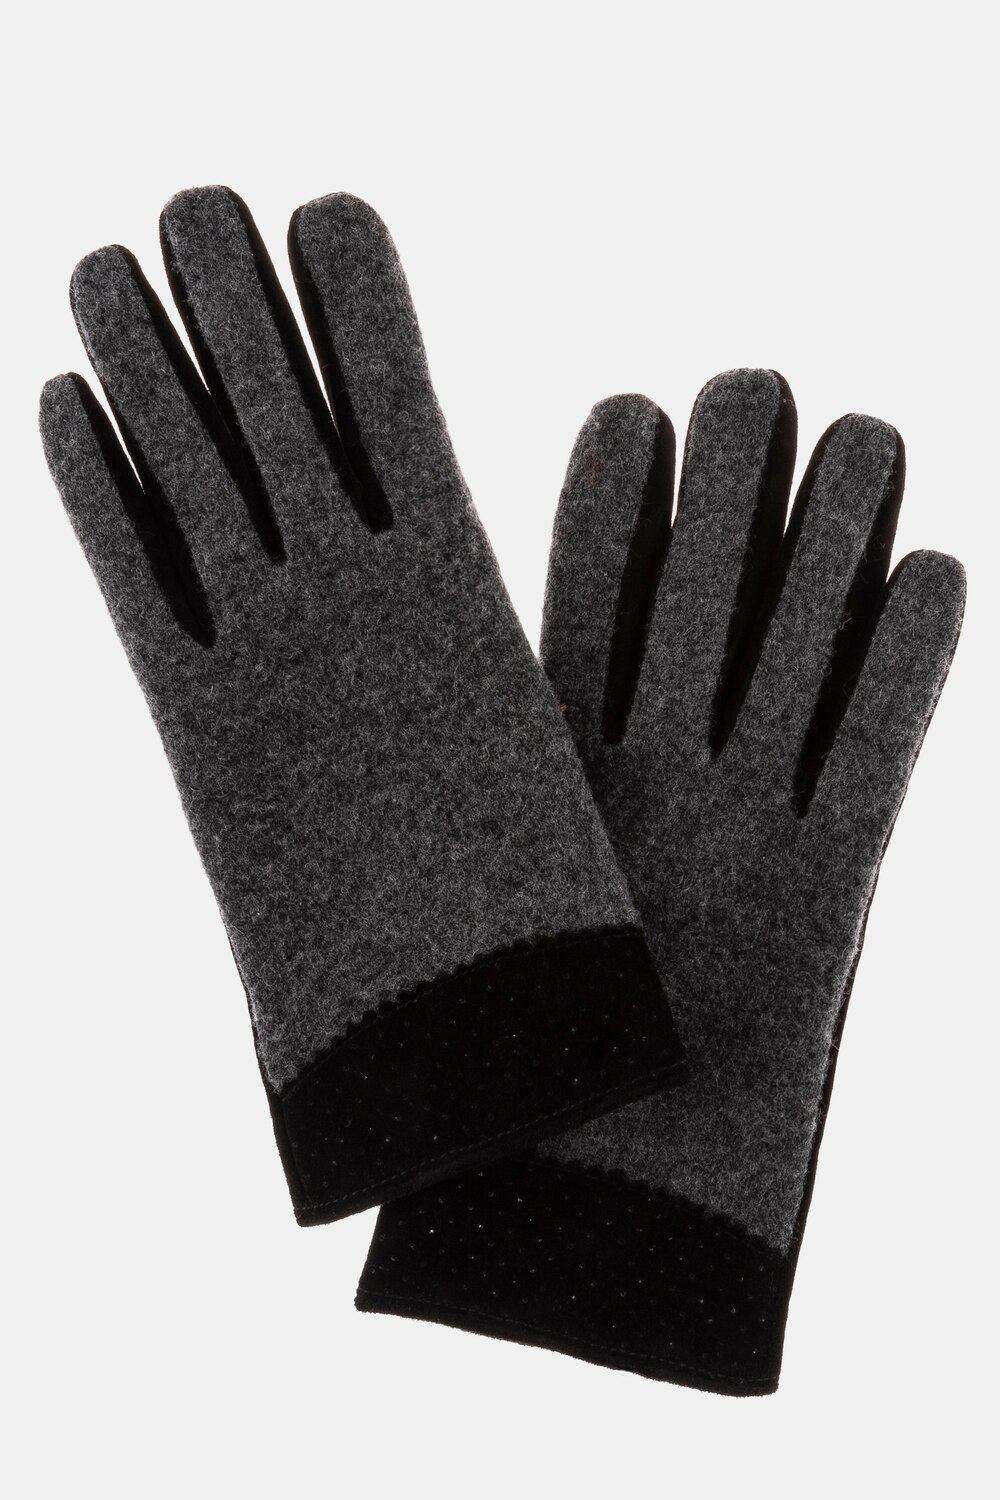 Grote Maten handschoenen, Dames, zwart, Maat: 50-56, Leer/Wol, Ulla Popken